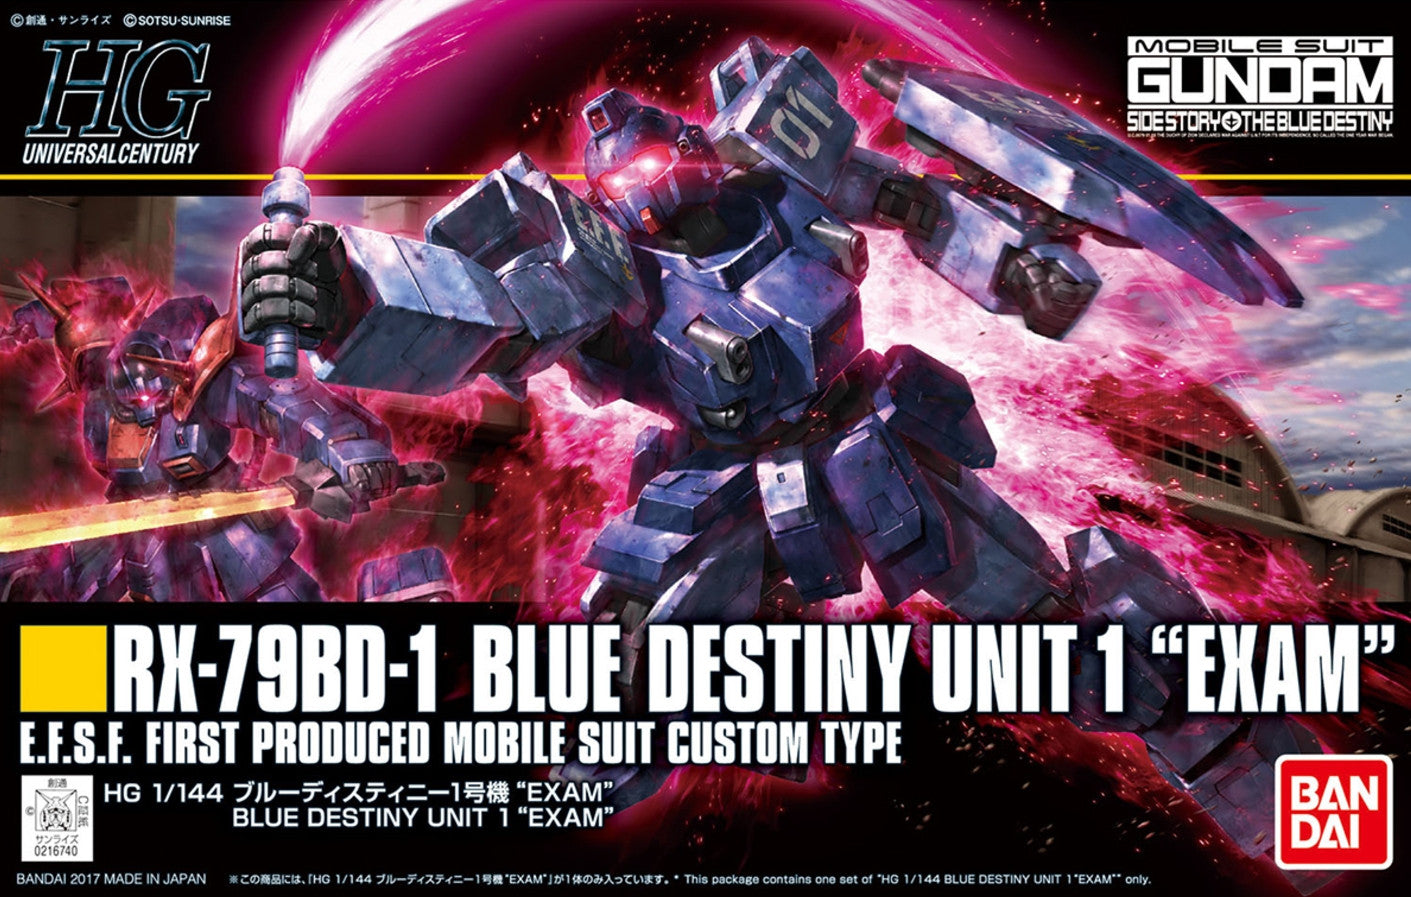 HG 1/144 RX-79BD-1 BLUE DESTINY UNIT 1 "EXAM"